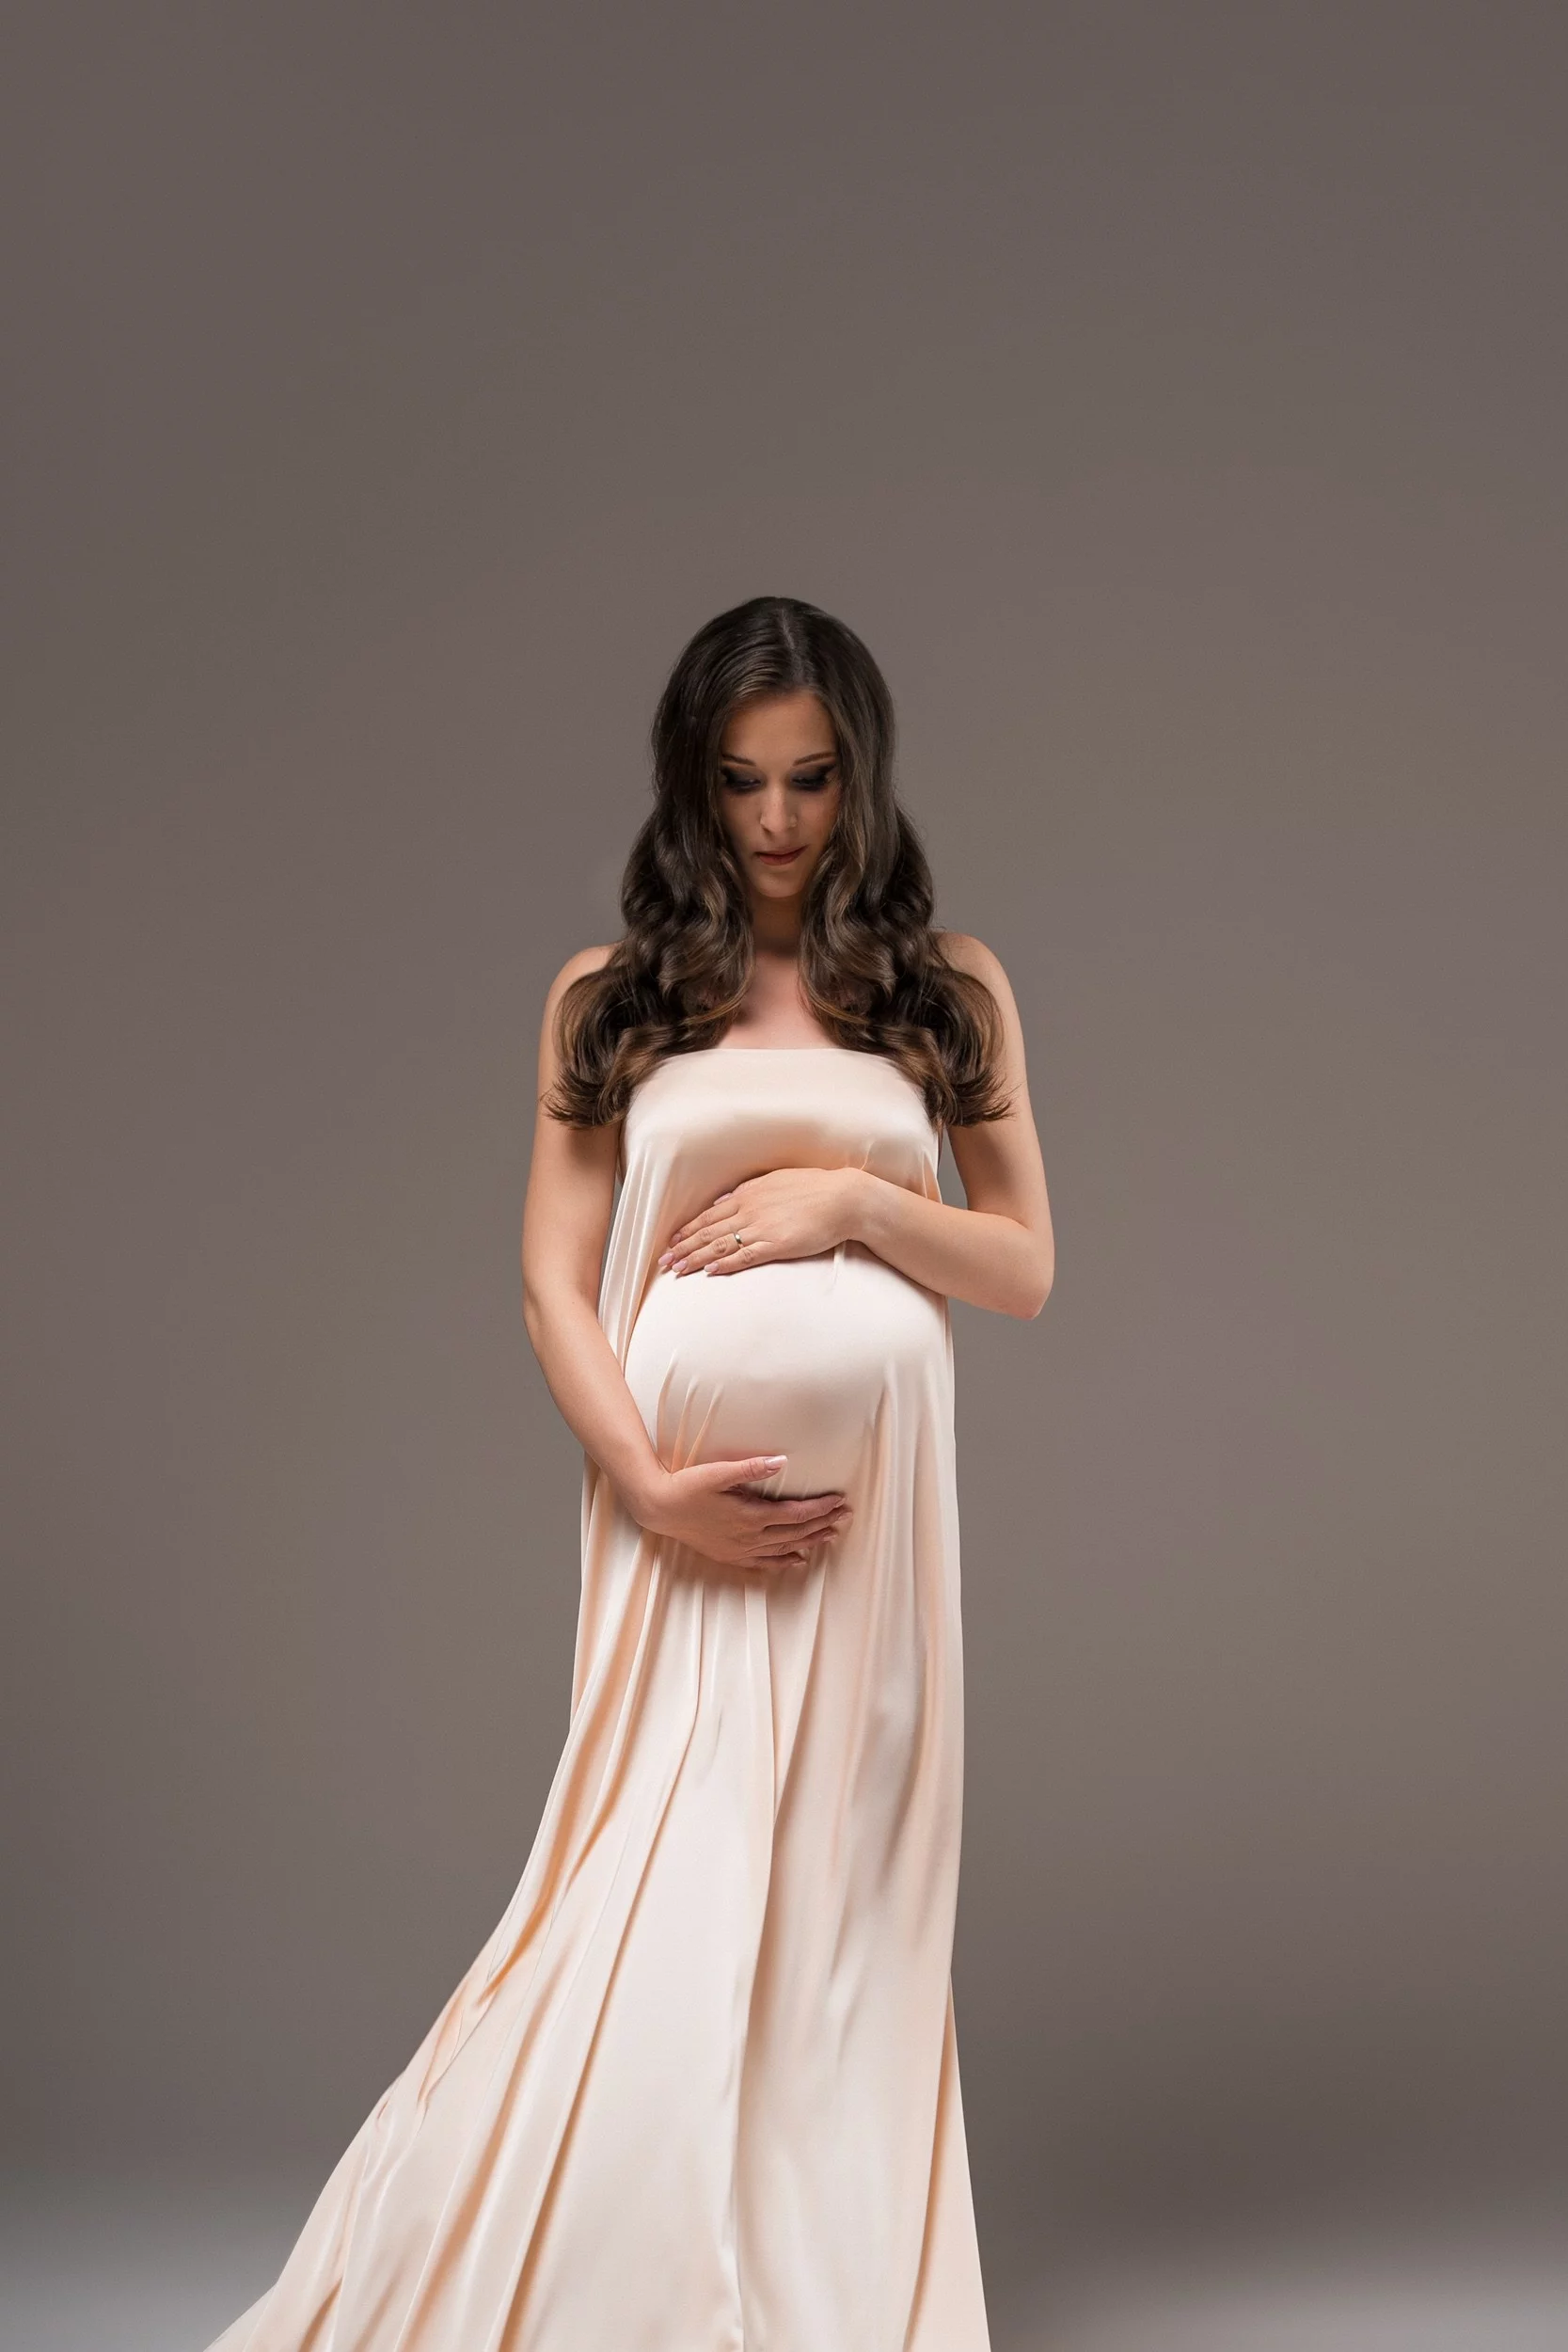 Stilno nosečniško fotografiranje v svetli obleki v foto studiu v Ljubljani